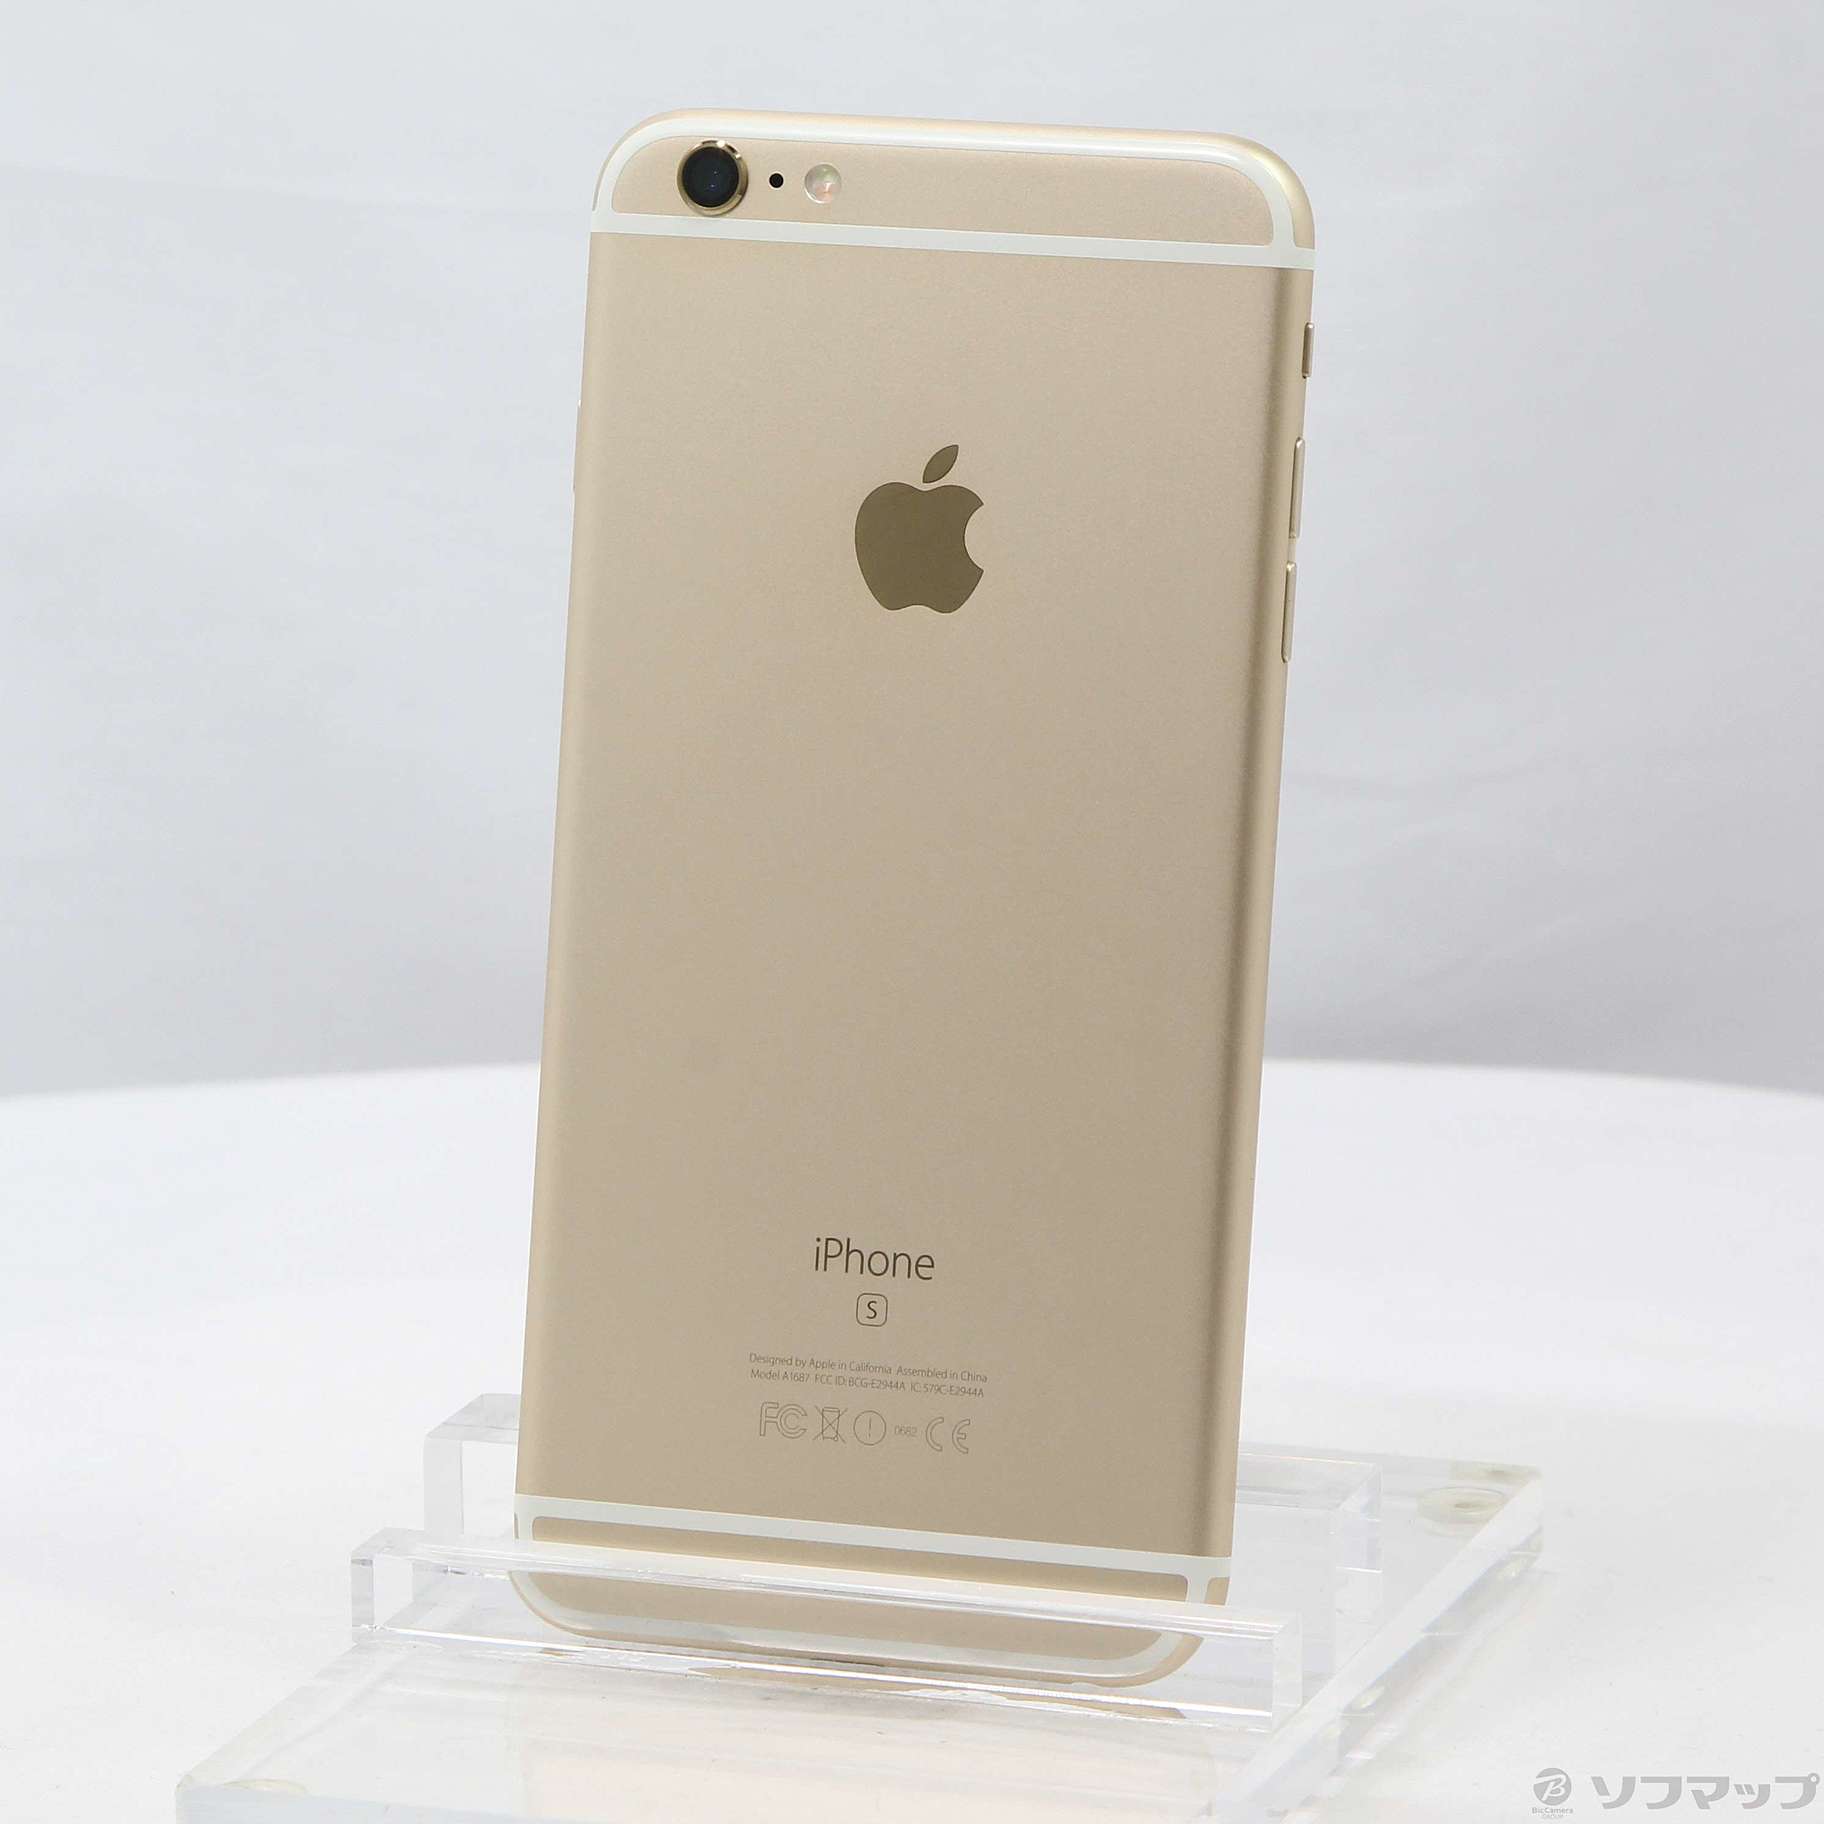 iPhone 6s Gold 16 GB SIMフリー - 携帯電話